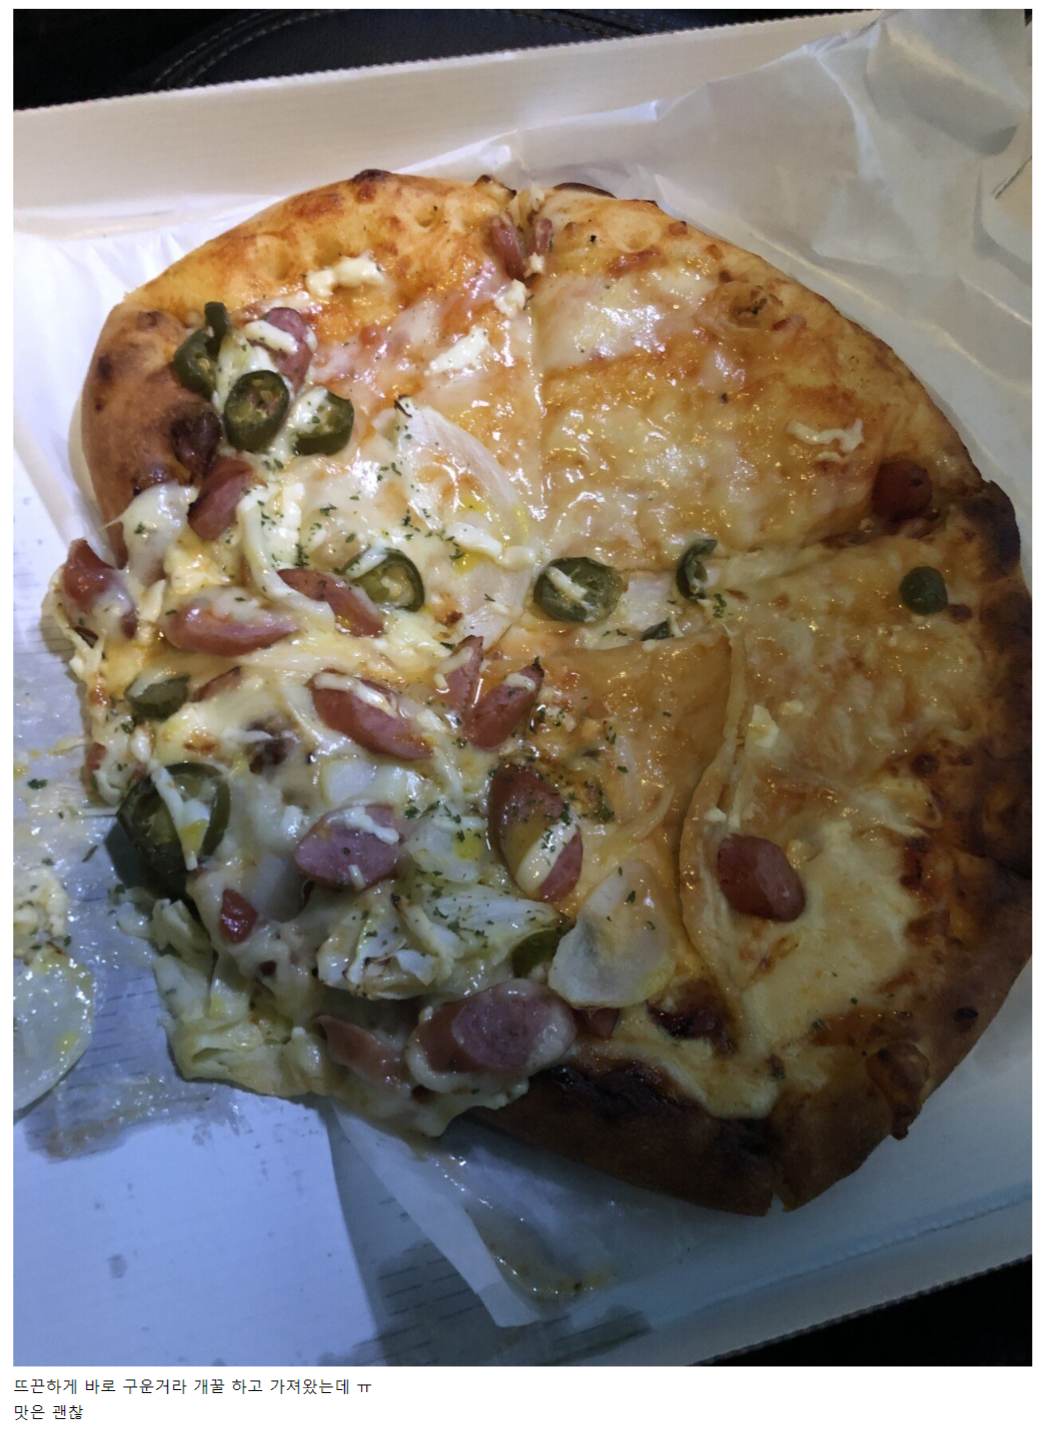 썸네일-6000원짜리 이마트 피자 후기-이미지